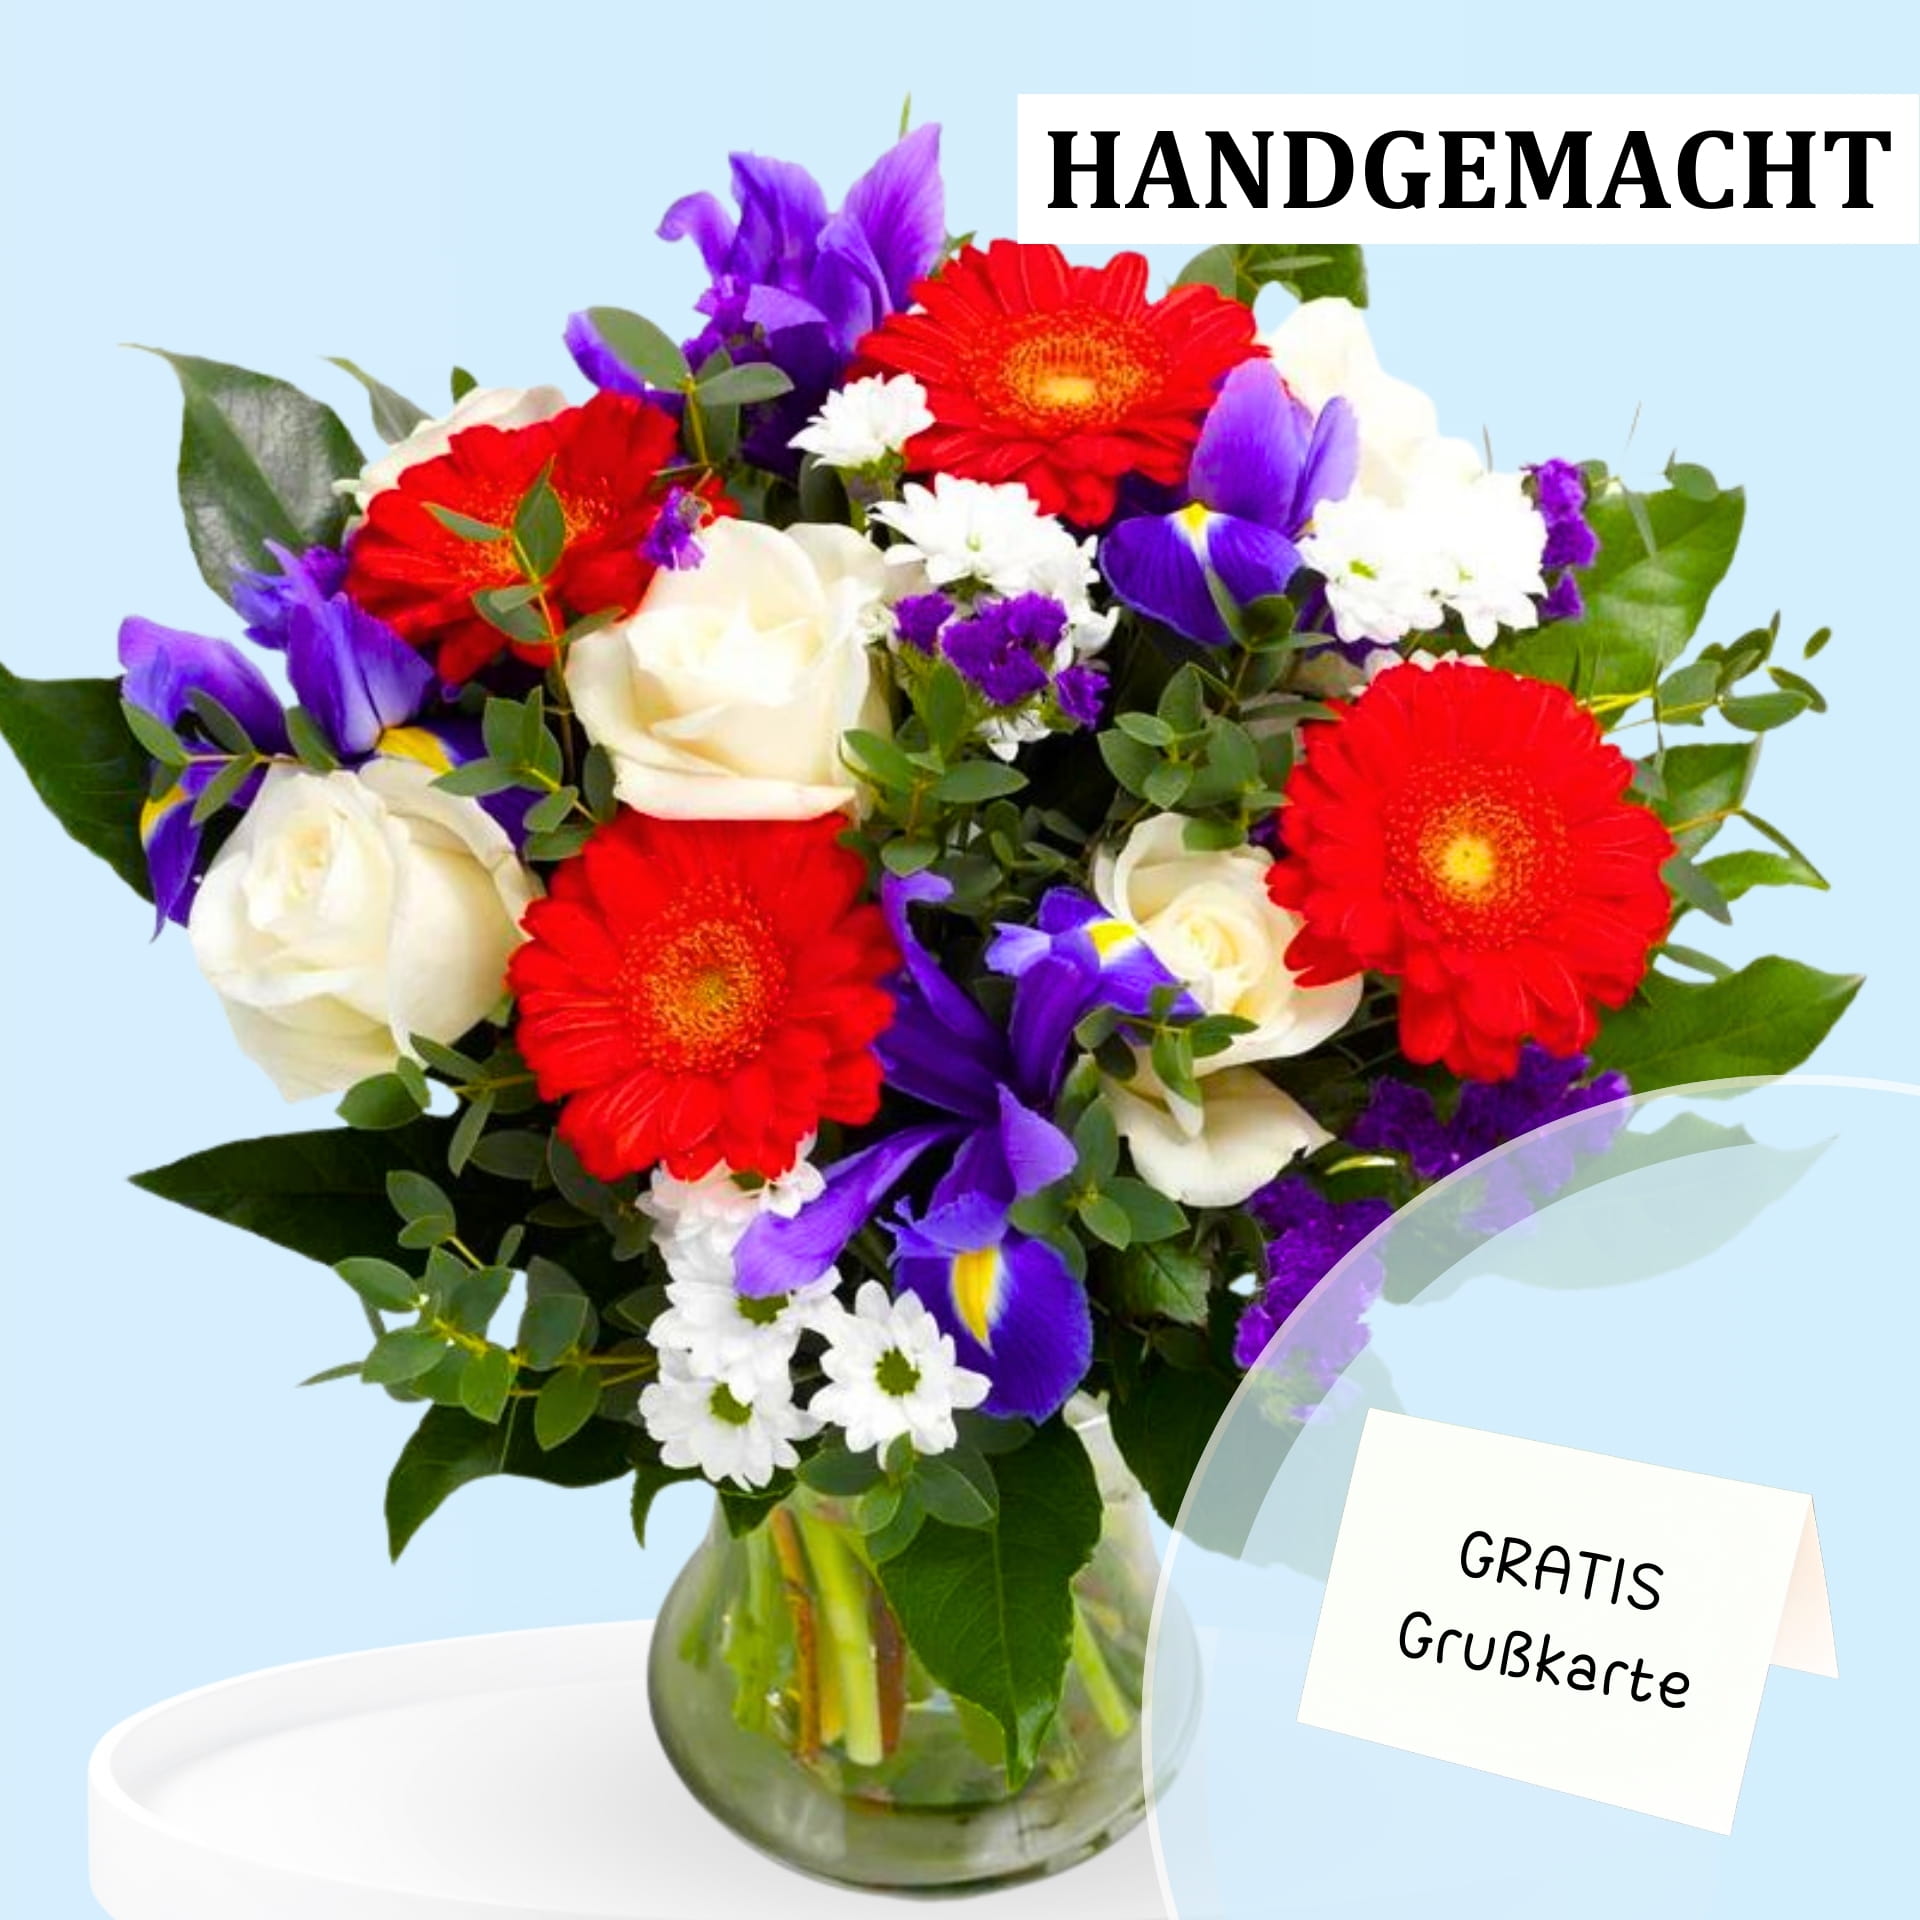 Eleganter Blumenstrauß aus roten Gerbera, weißen Rosen und lila Iris, verziert mit grünem Laub und weißen Gänseblümchen, inklusive Grußkarte